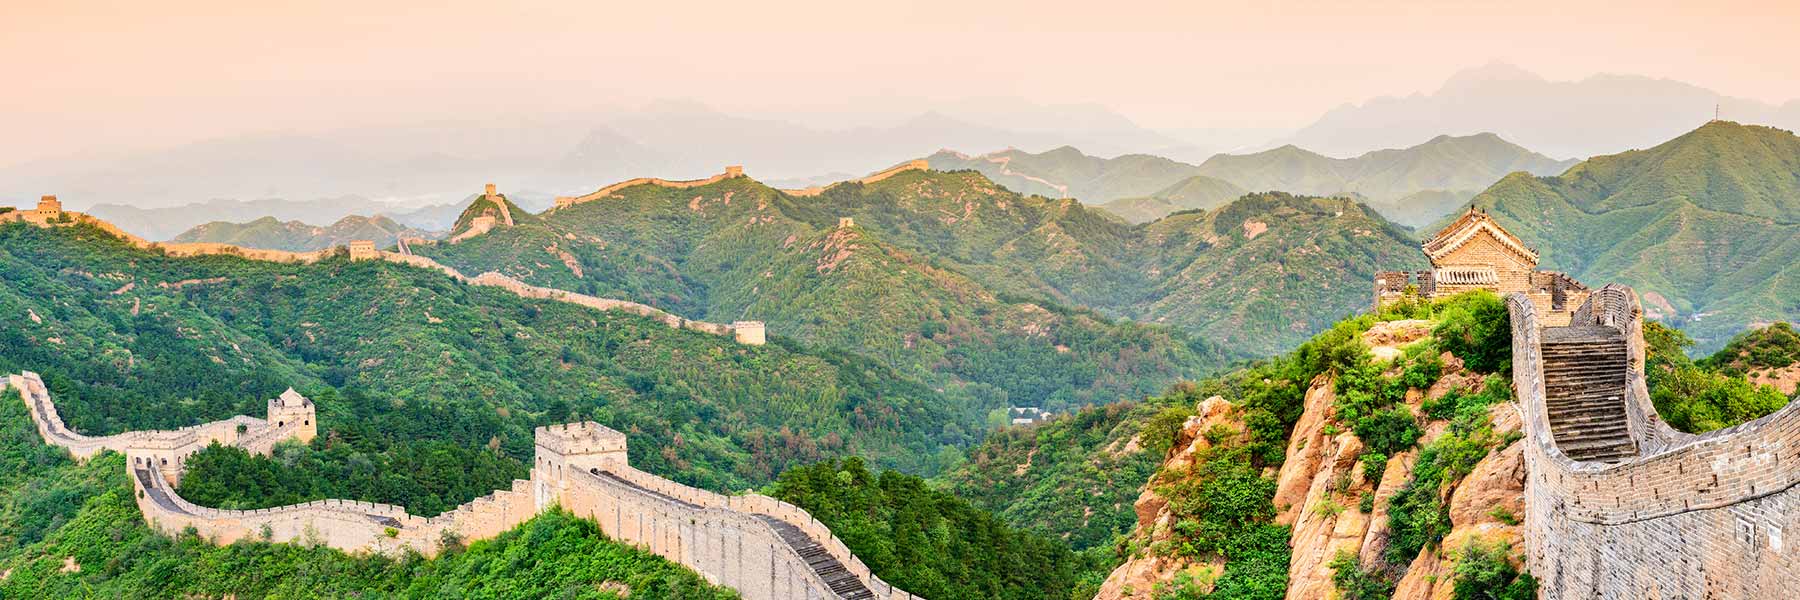 Нефритовые ворота Великой китайской стены